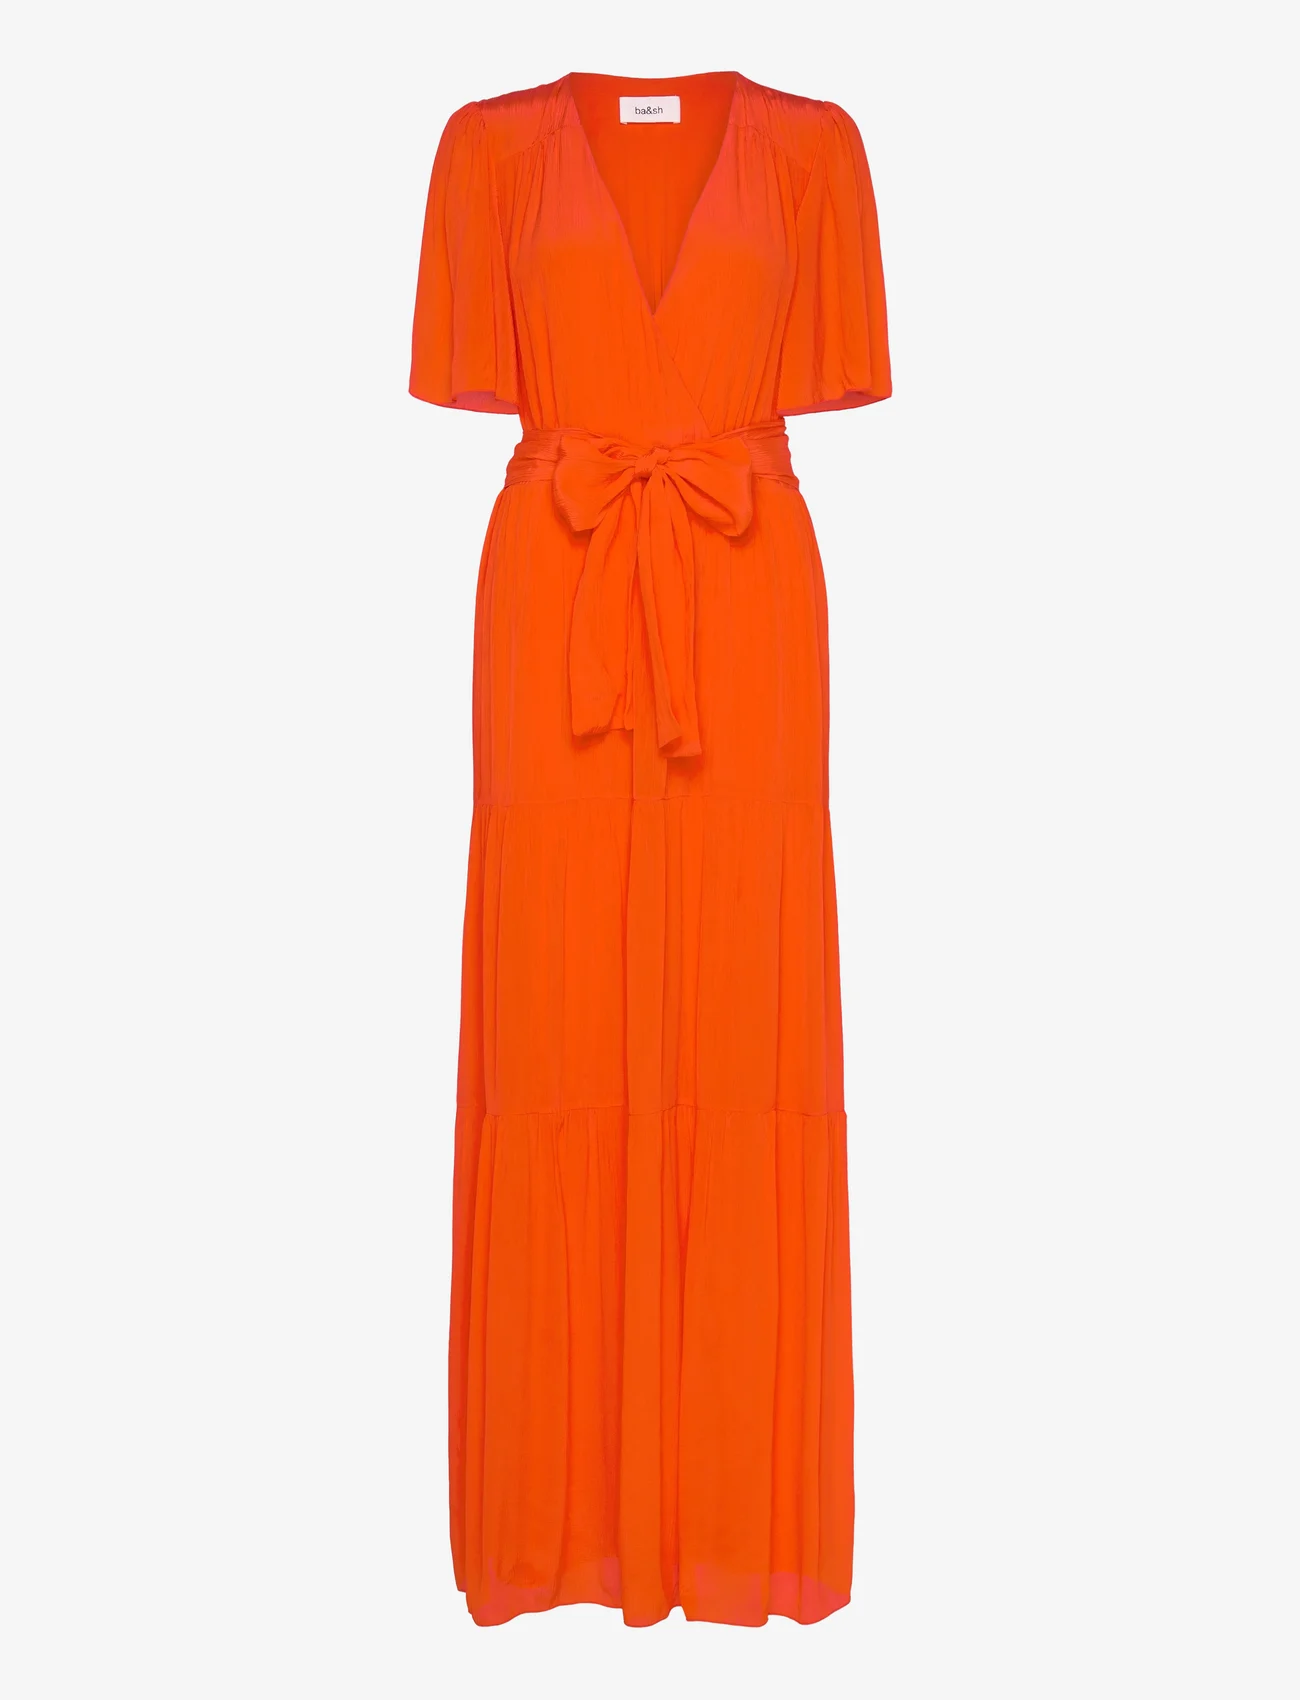 ba&sh - DRESS NATALIA - omlottklänningar - orange - 1